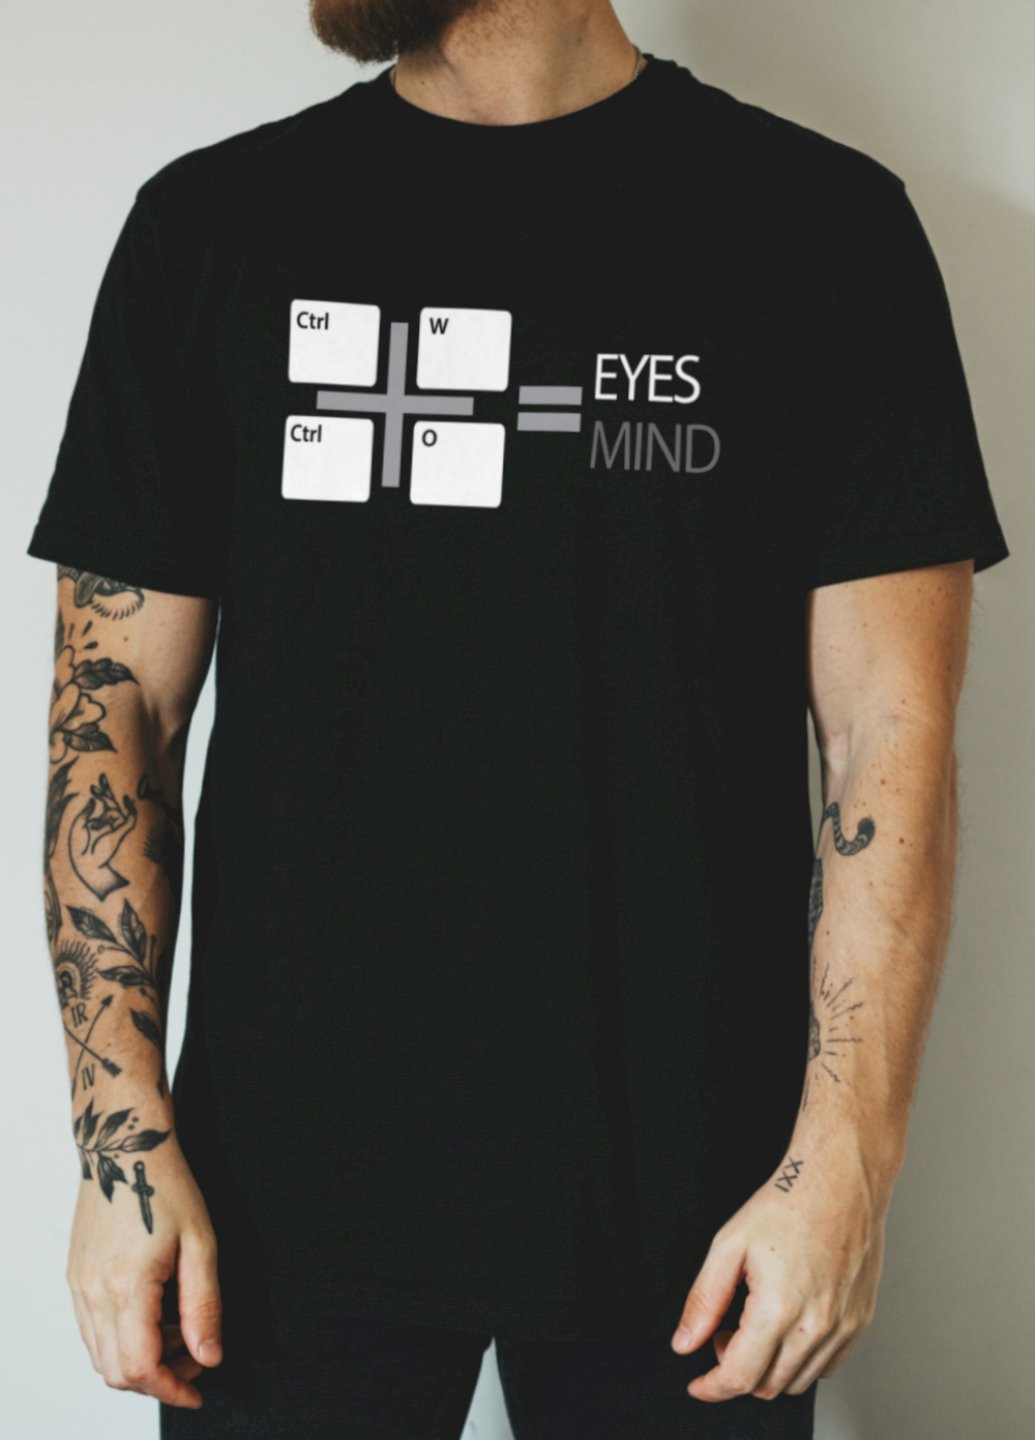 Черная футболка "eyes mind" Ctrl+